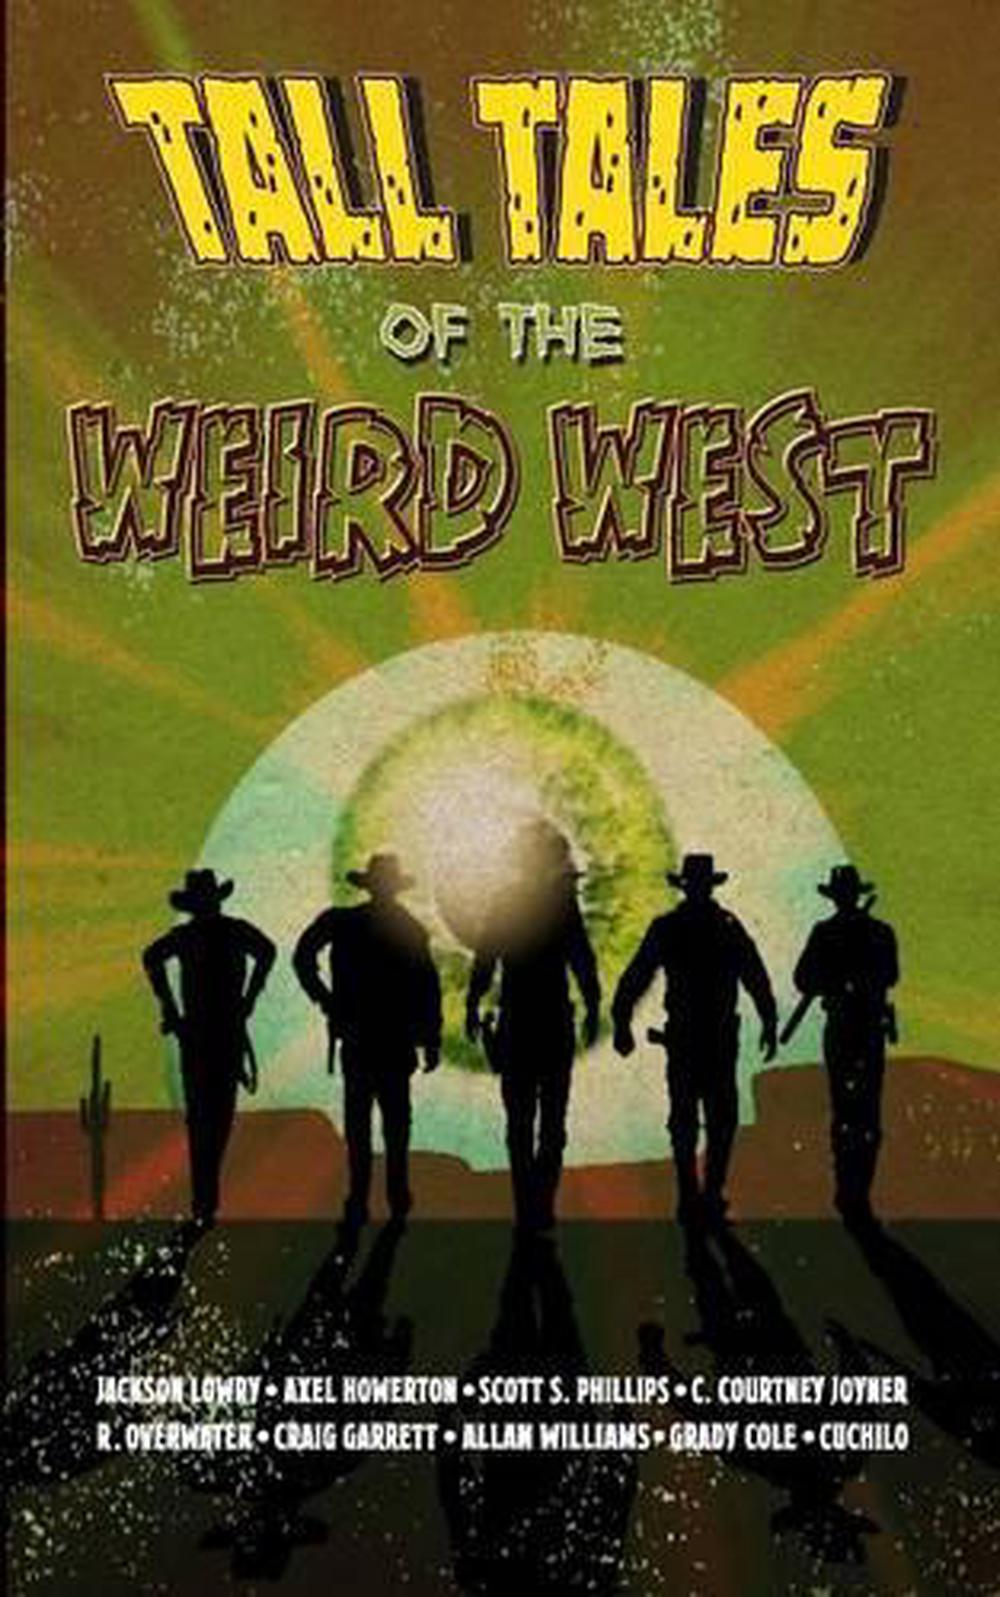 weird west books